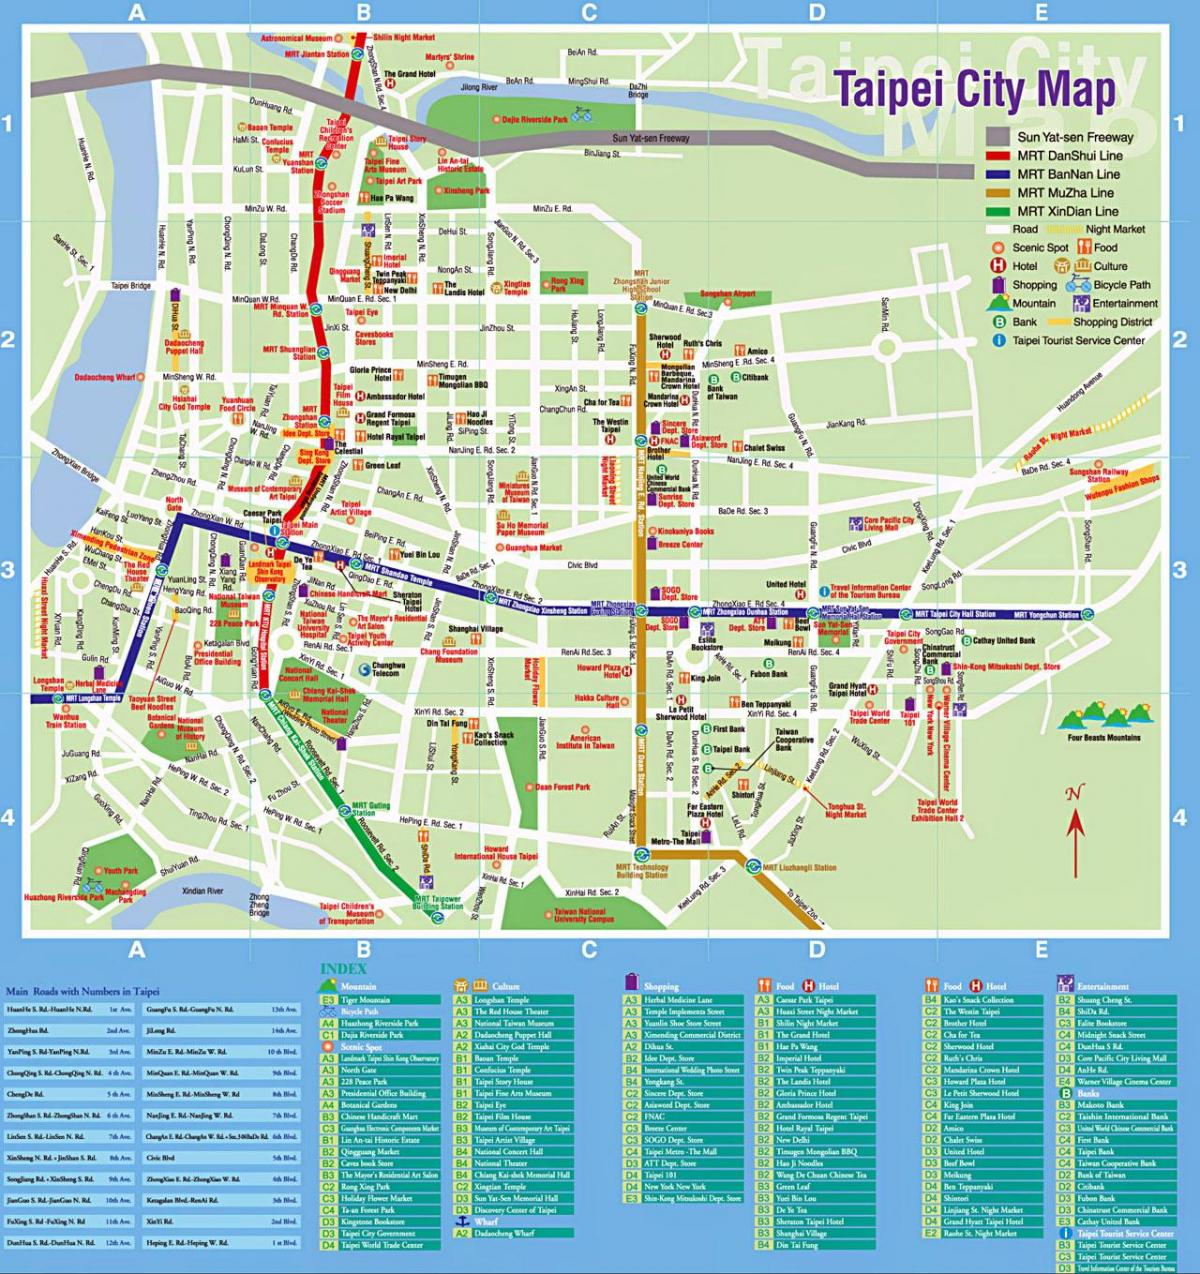 mapa Taipei city turismo